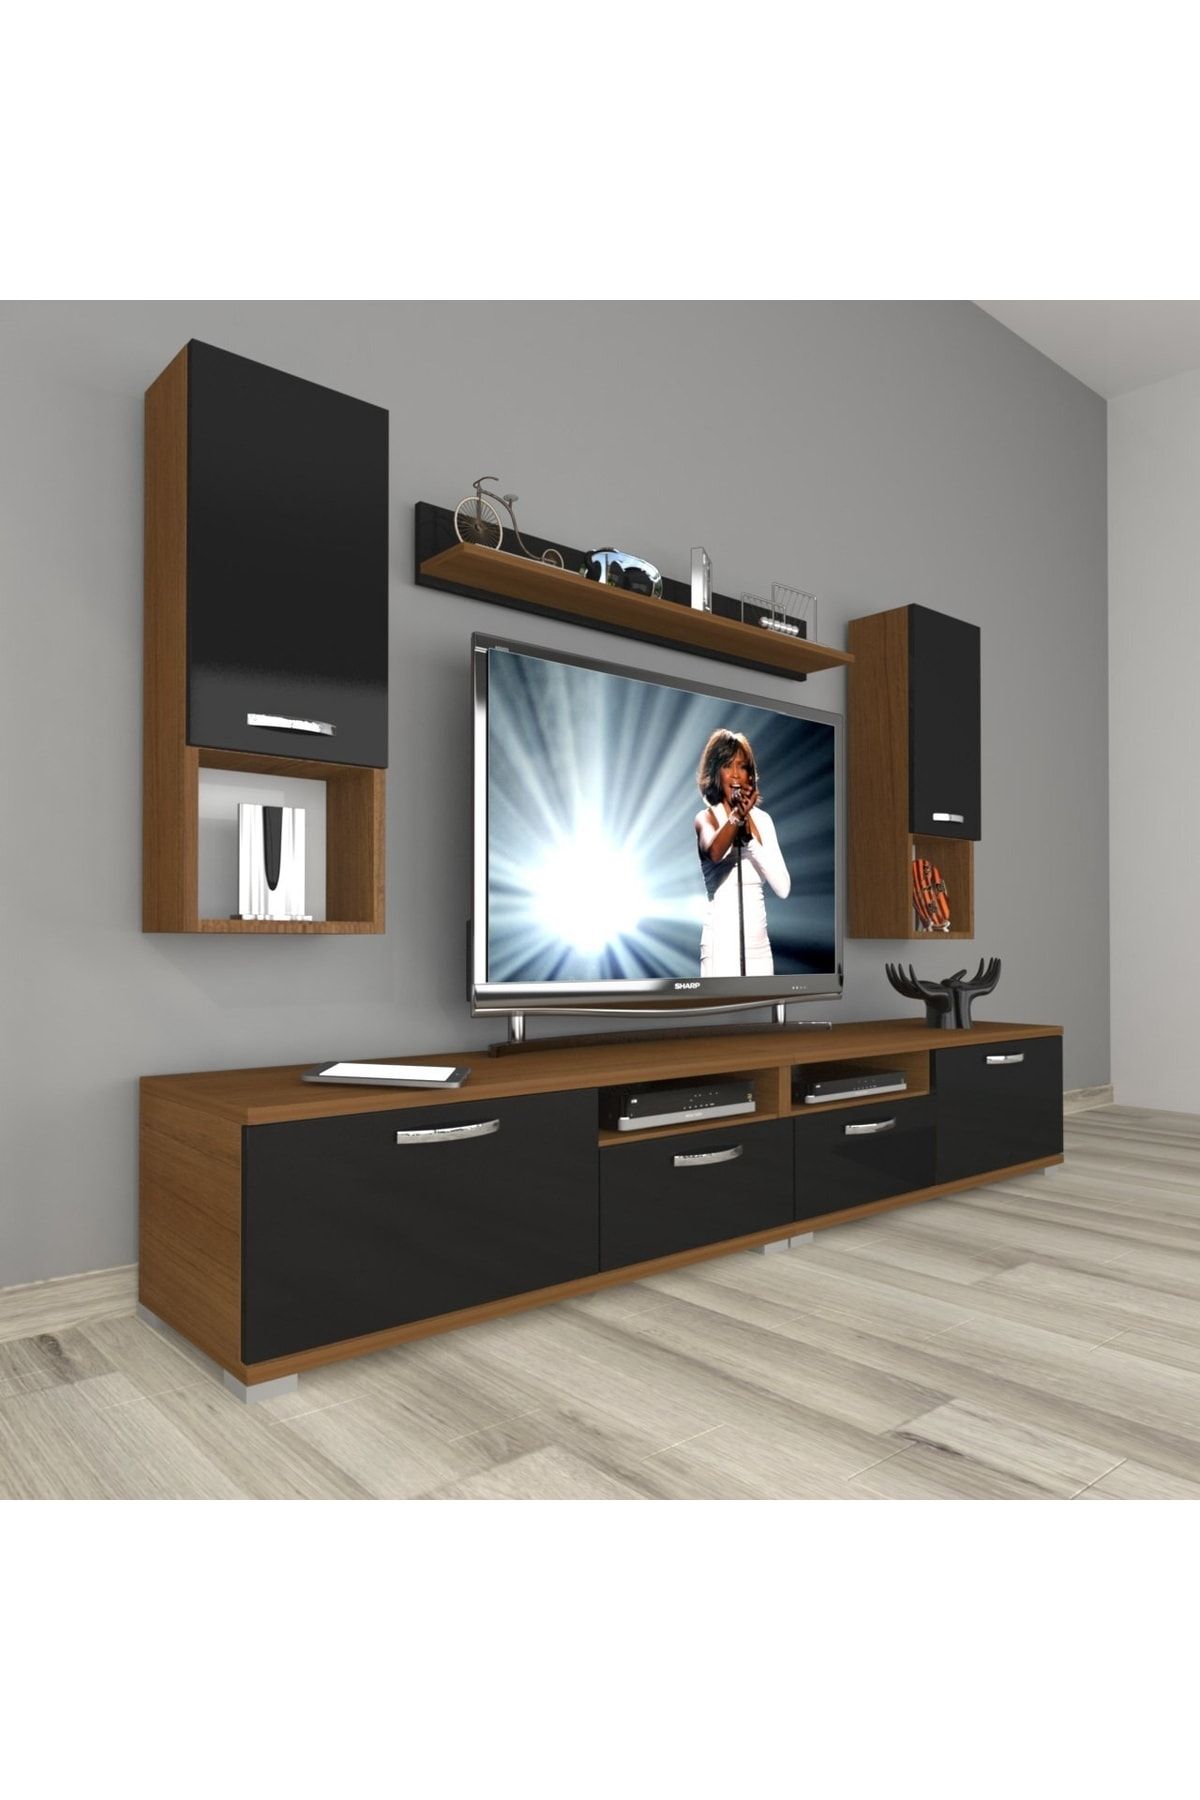 Decoraktiv Eko 5220da Mdf Tv Ünitesi Tv Sehpası - Ceviz - Siyah